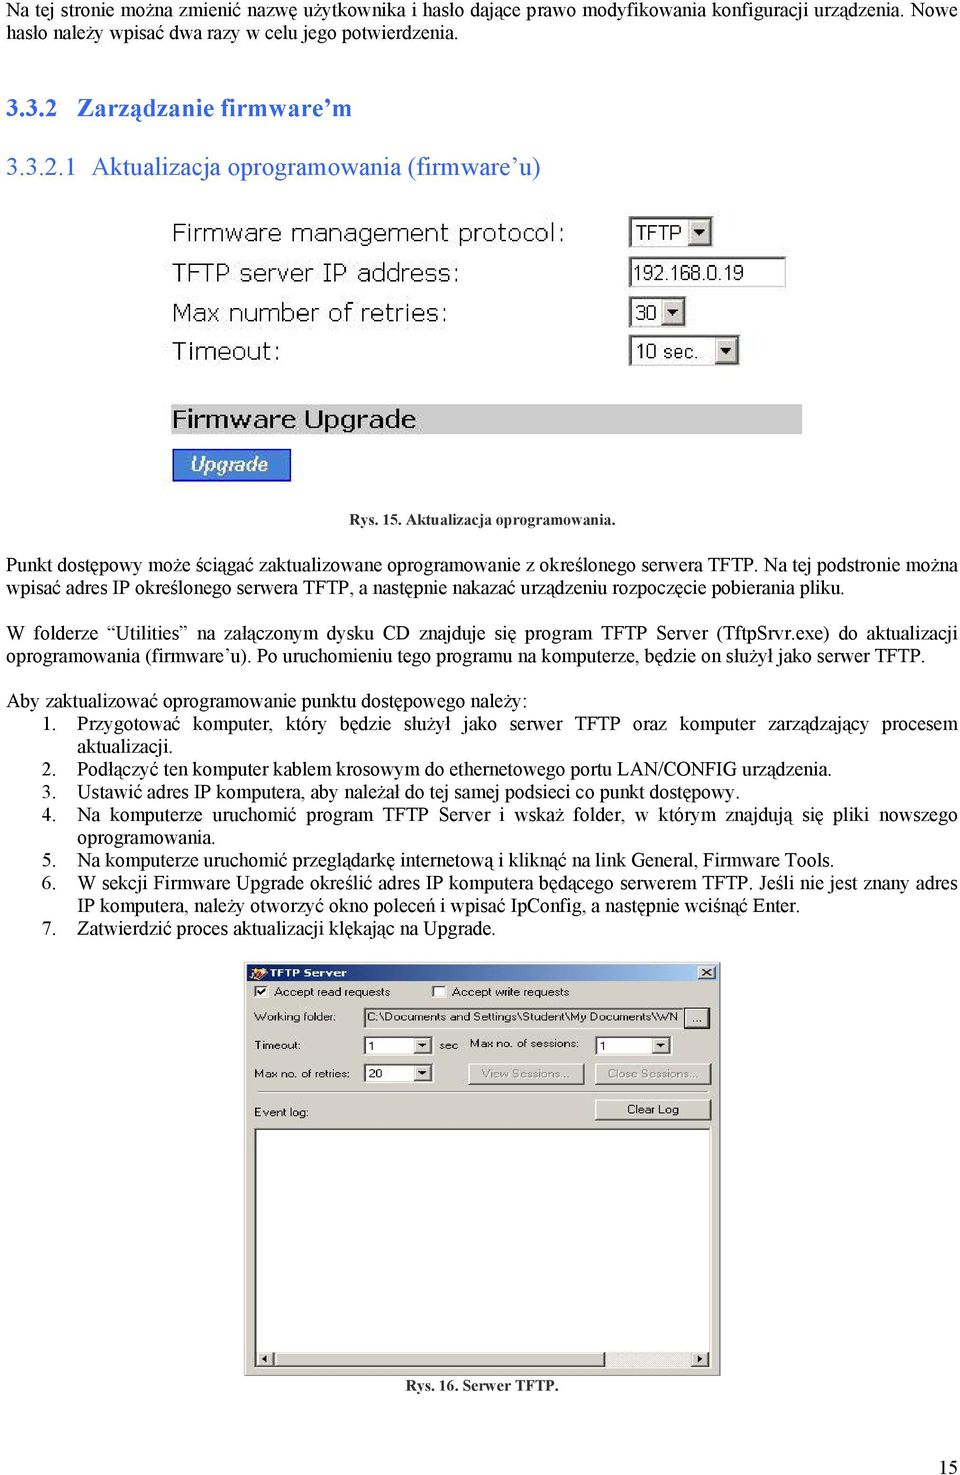 Na tej podstronie można wpisać adres IP określonego serwera TFTP, a następnie nakazać urządzeniu rozpoczęcie pobierania pliku.